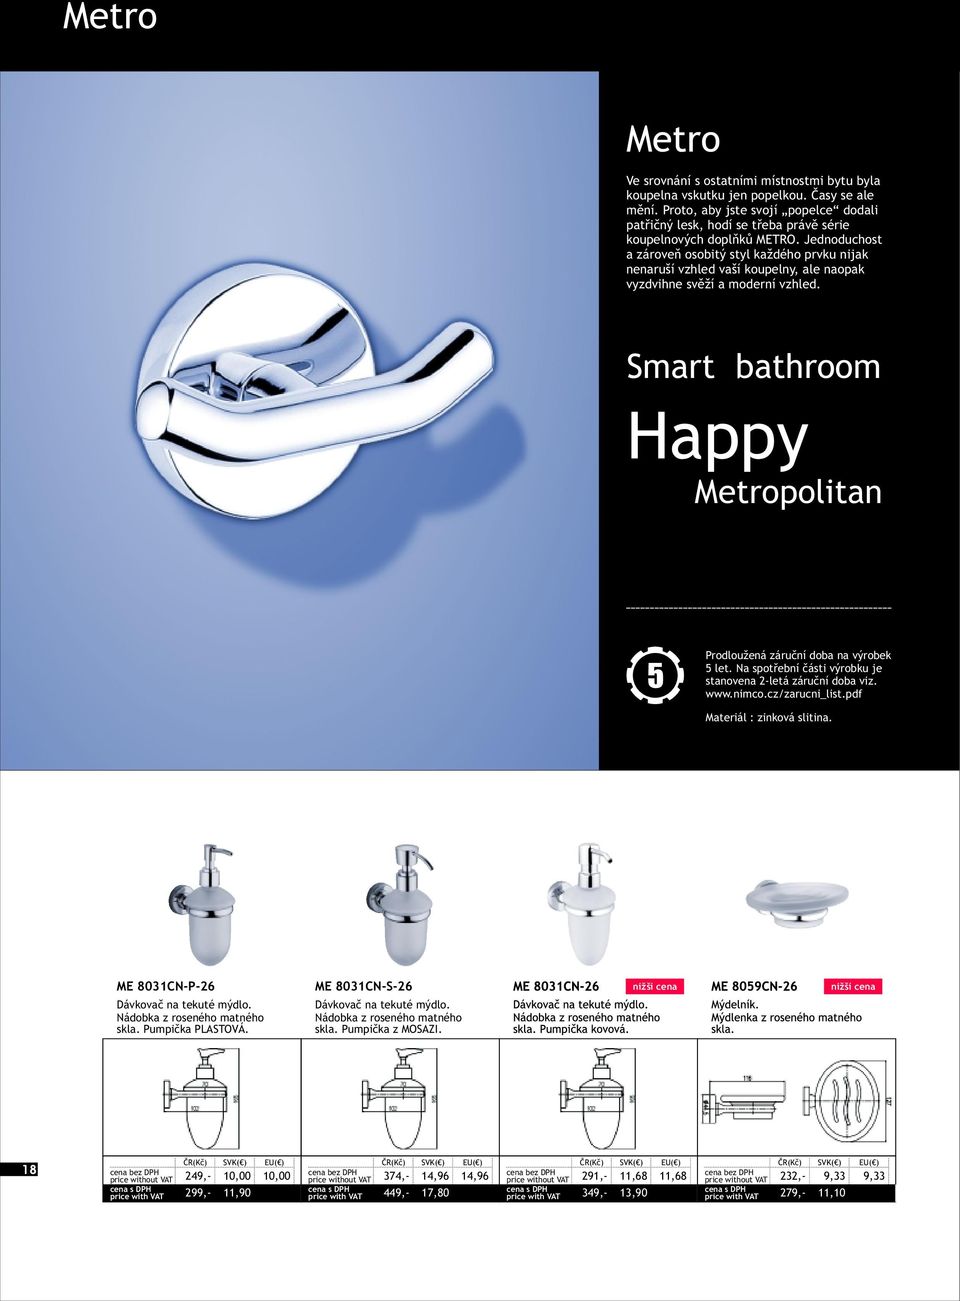 Smart bathroom Happy Metropolitan 5 Prodloužená záruèní doba na výrobek 5 let. Na spotøební èásti výrobku je stanovena 2-letá záruèní doba viz. www.nimco.cz/zarucni_list.